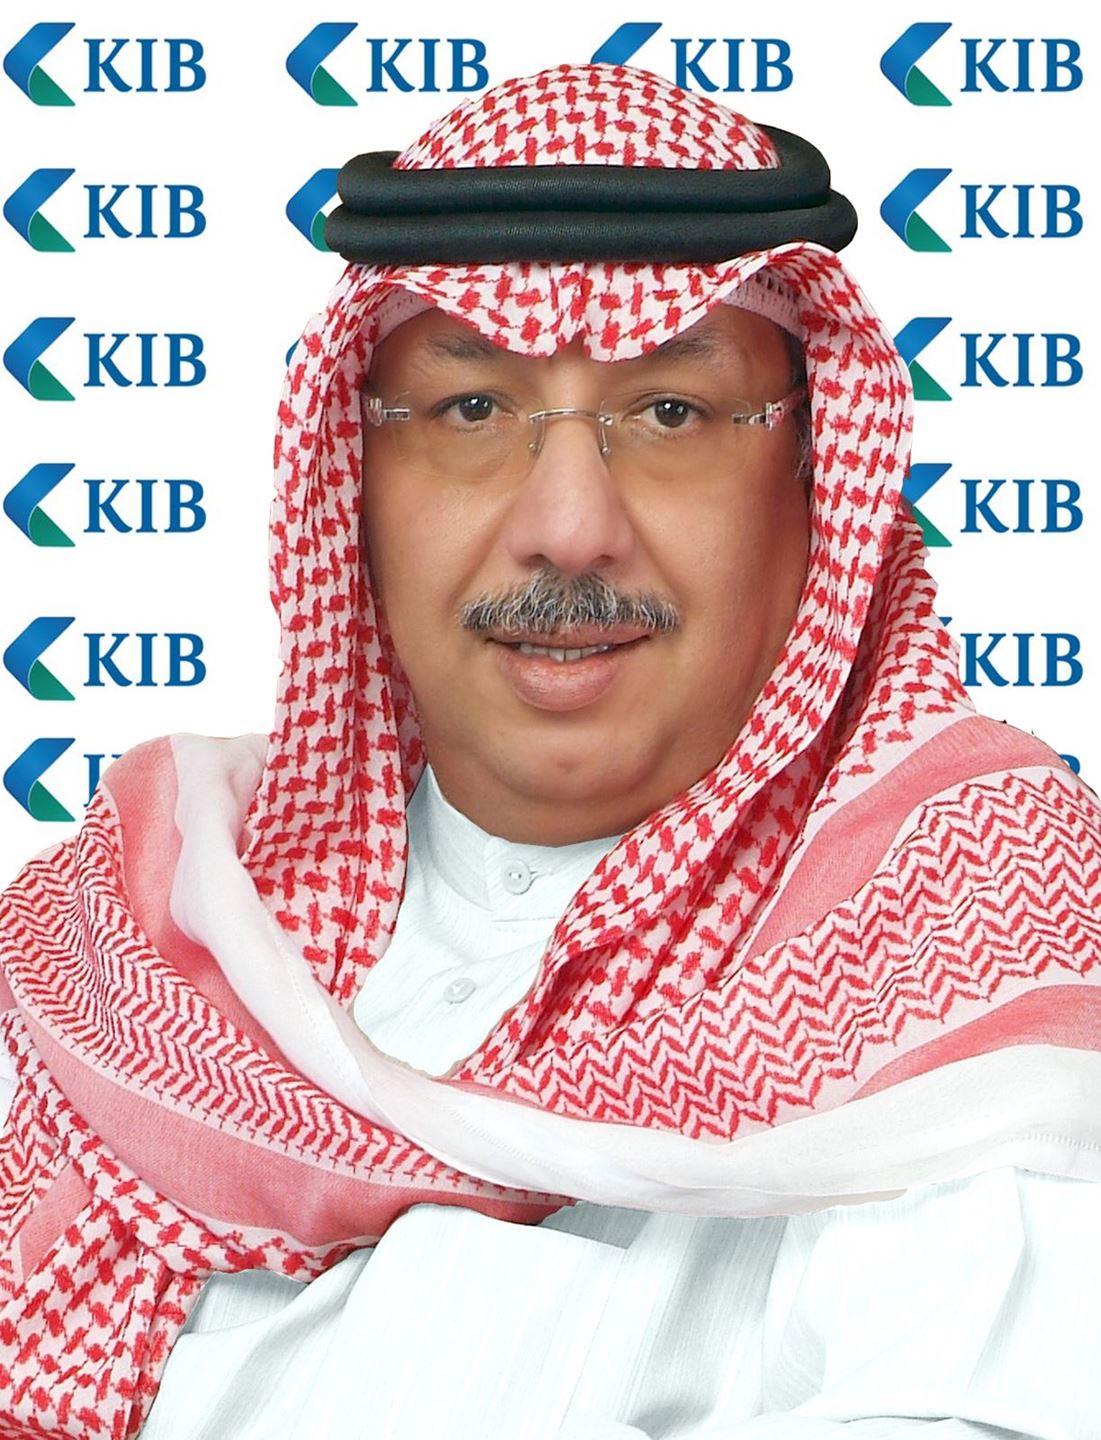 الشيخ/ محمد جرّاح الصباح، رئيس مجلس إدارة بنك الكويت الدولي (KIB)